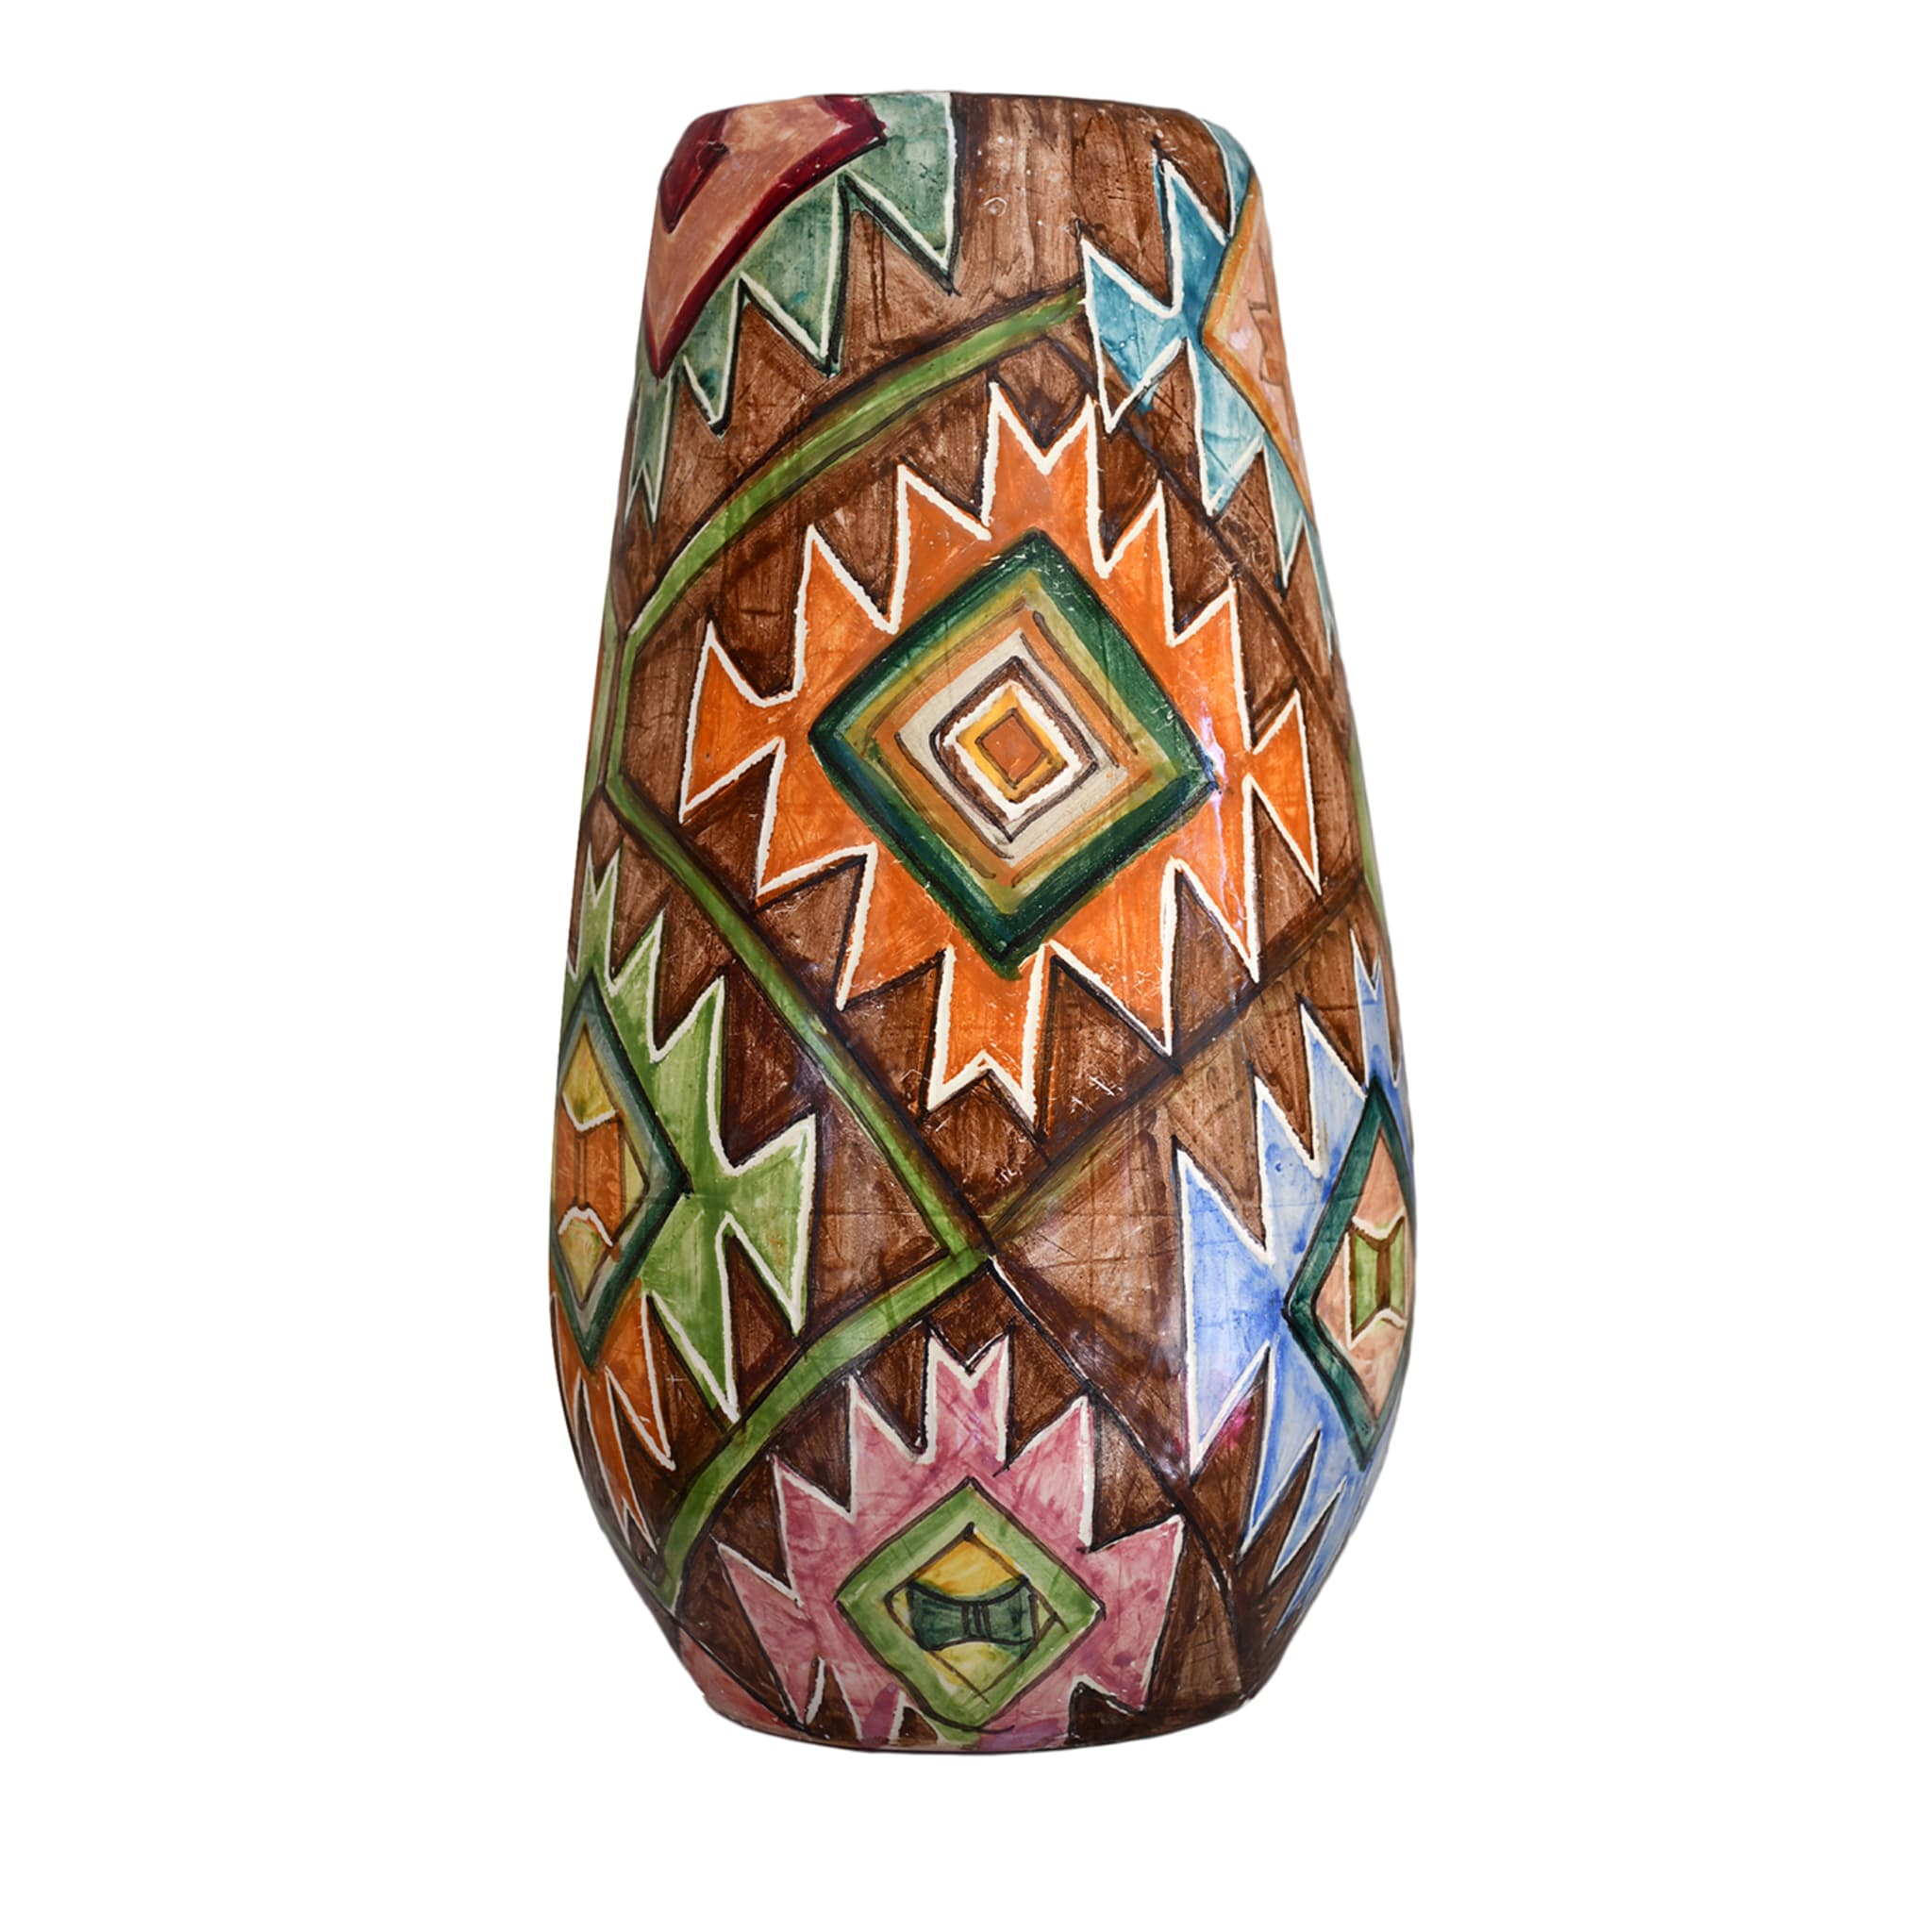 Vaso policromo in stile geometrico Kilim - Vista principale